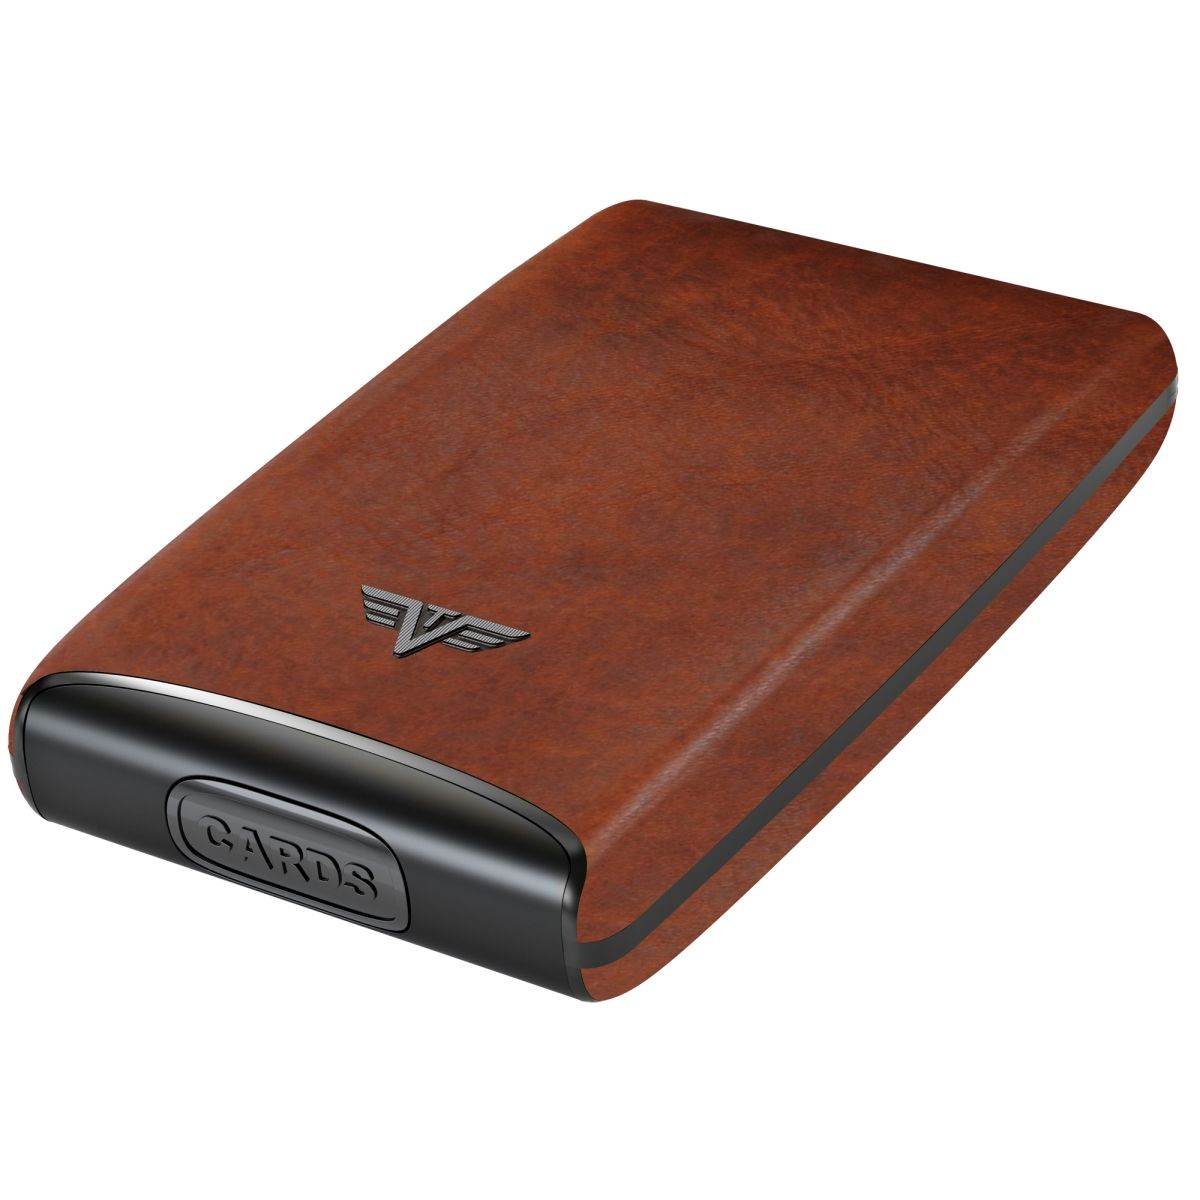 TRU VIRTU Aluminum Card Case Fan Leather Line - Natural Brown